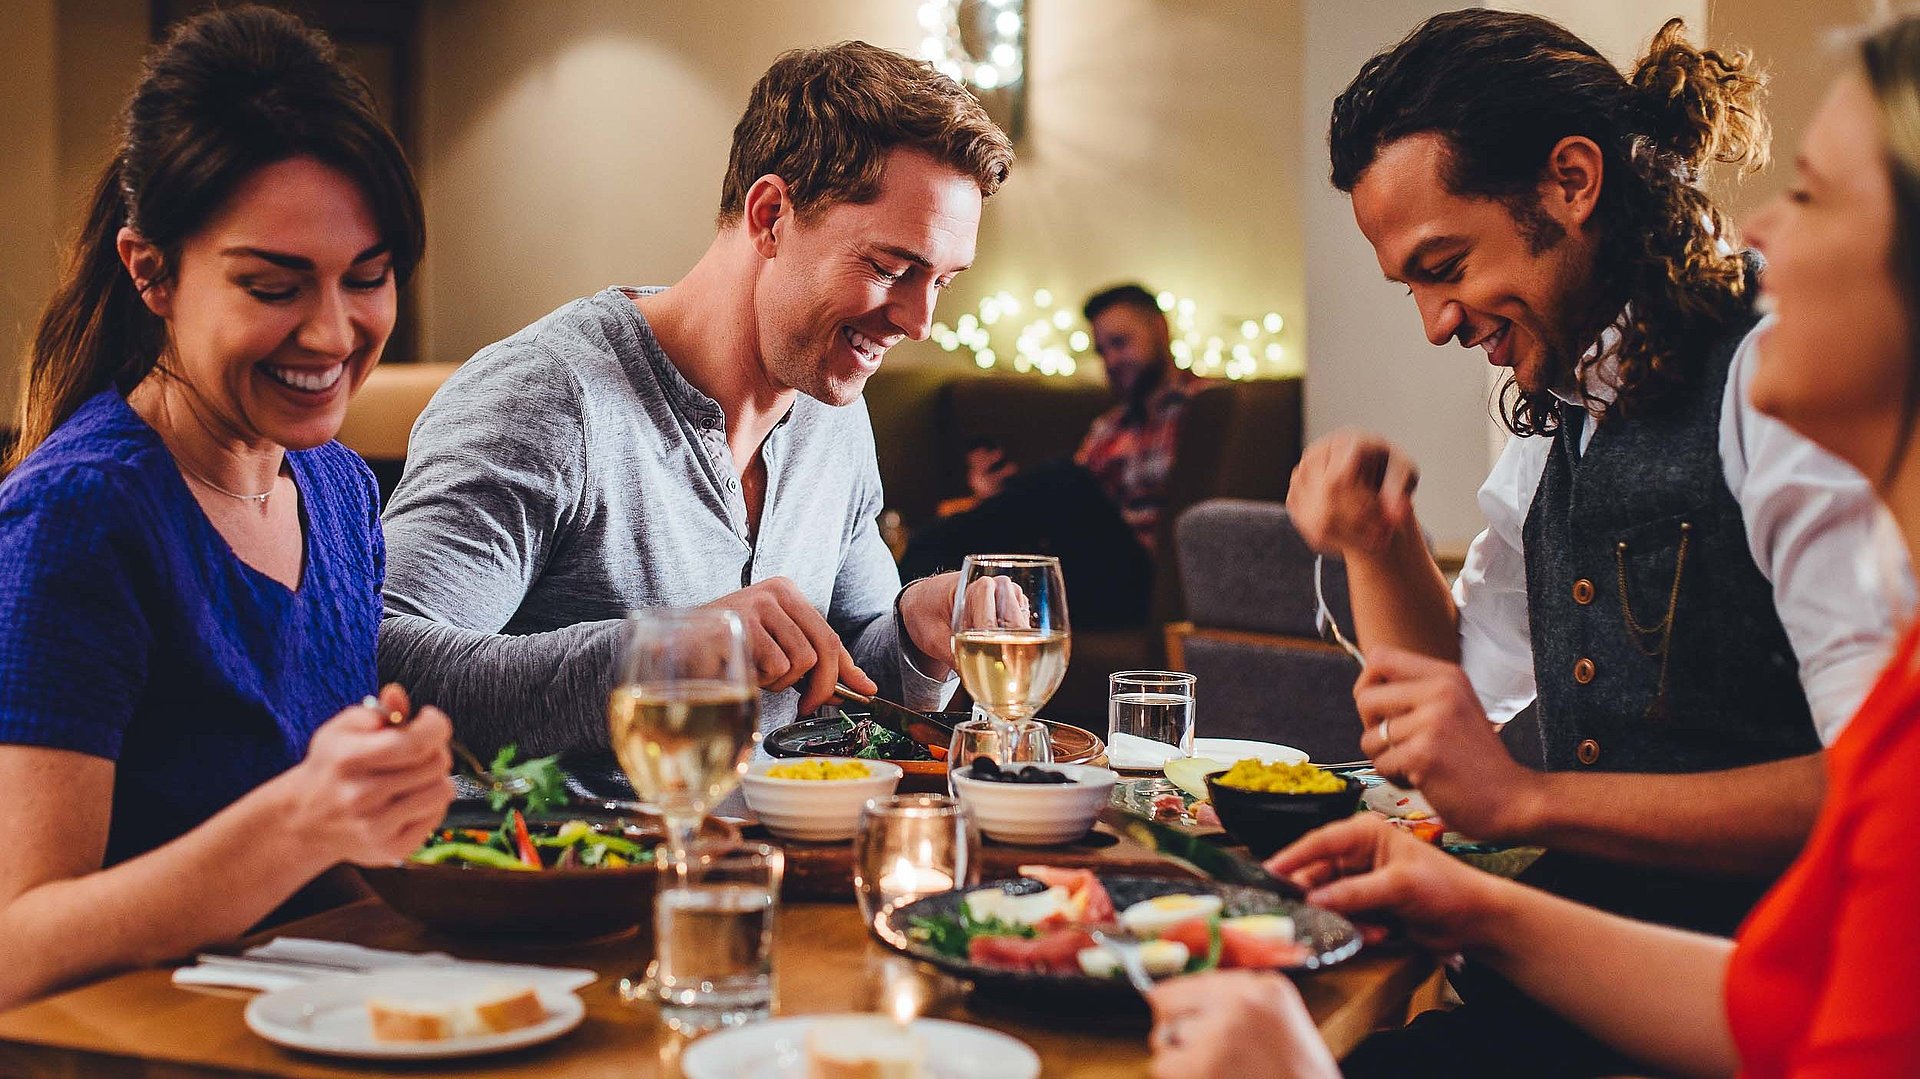 Gastronomie in Ostbayern - eine Gruppe von Gästen lacht zusammen an einem bedeckten Tisch